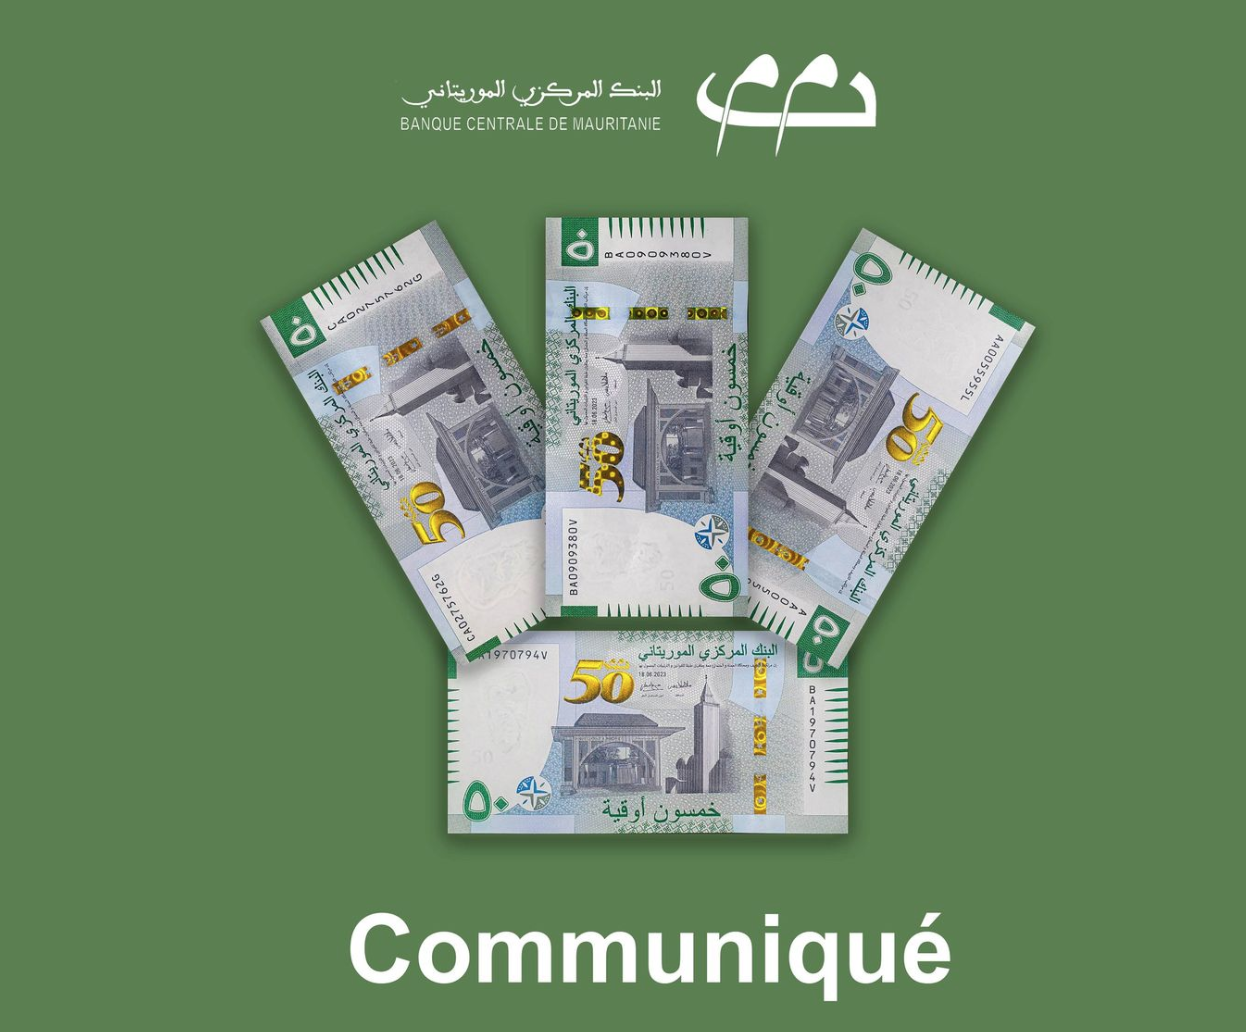 La BCM : Le billet de banque de 50 ouguiyas est disponible en trois substrats, tous valables et garantis